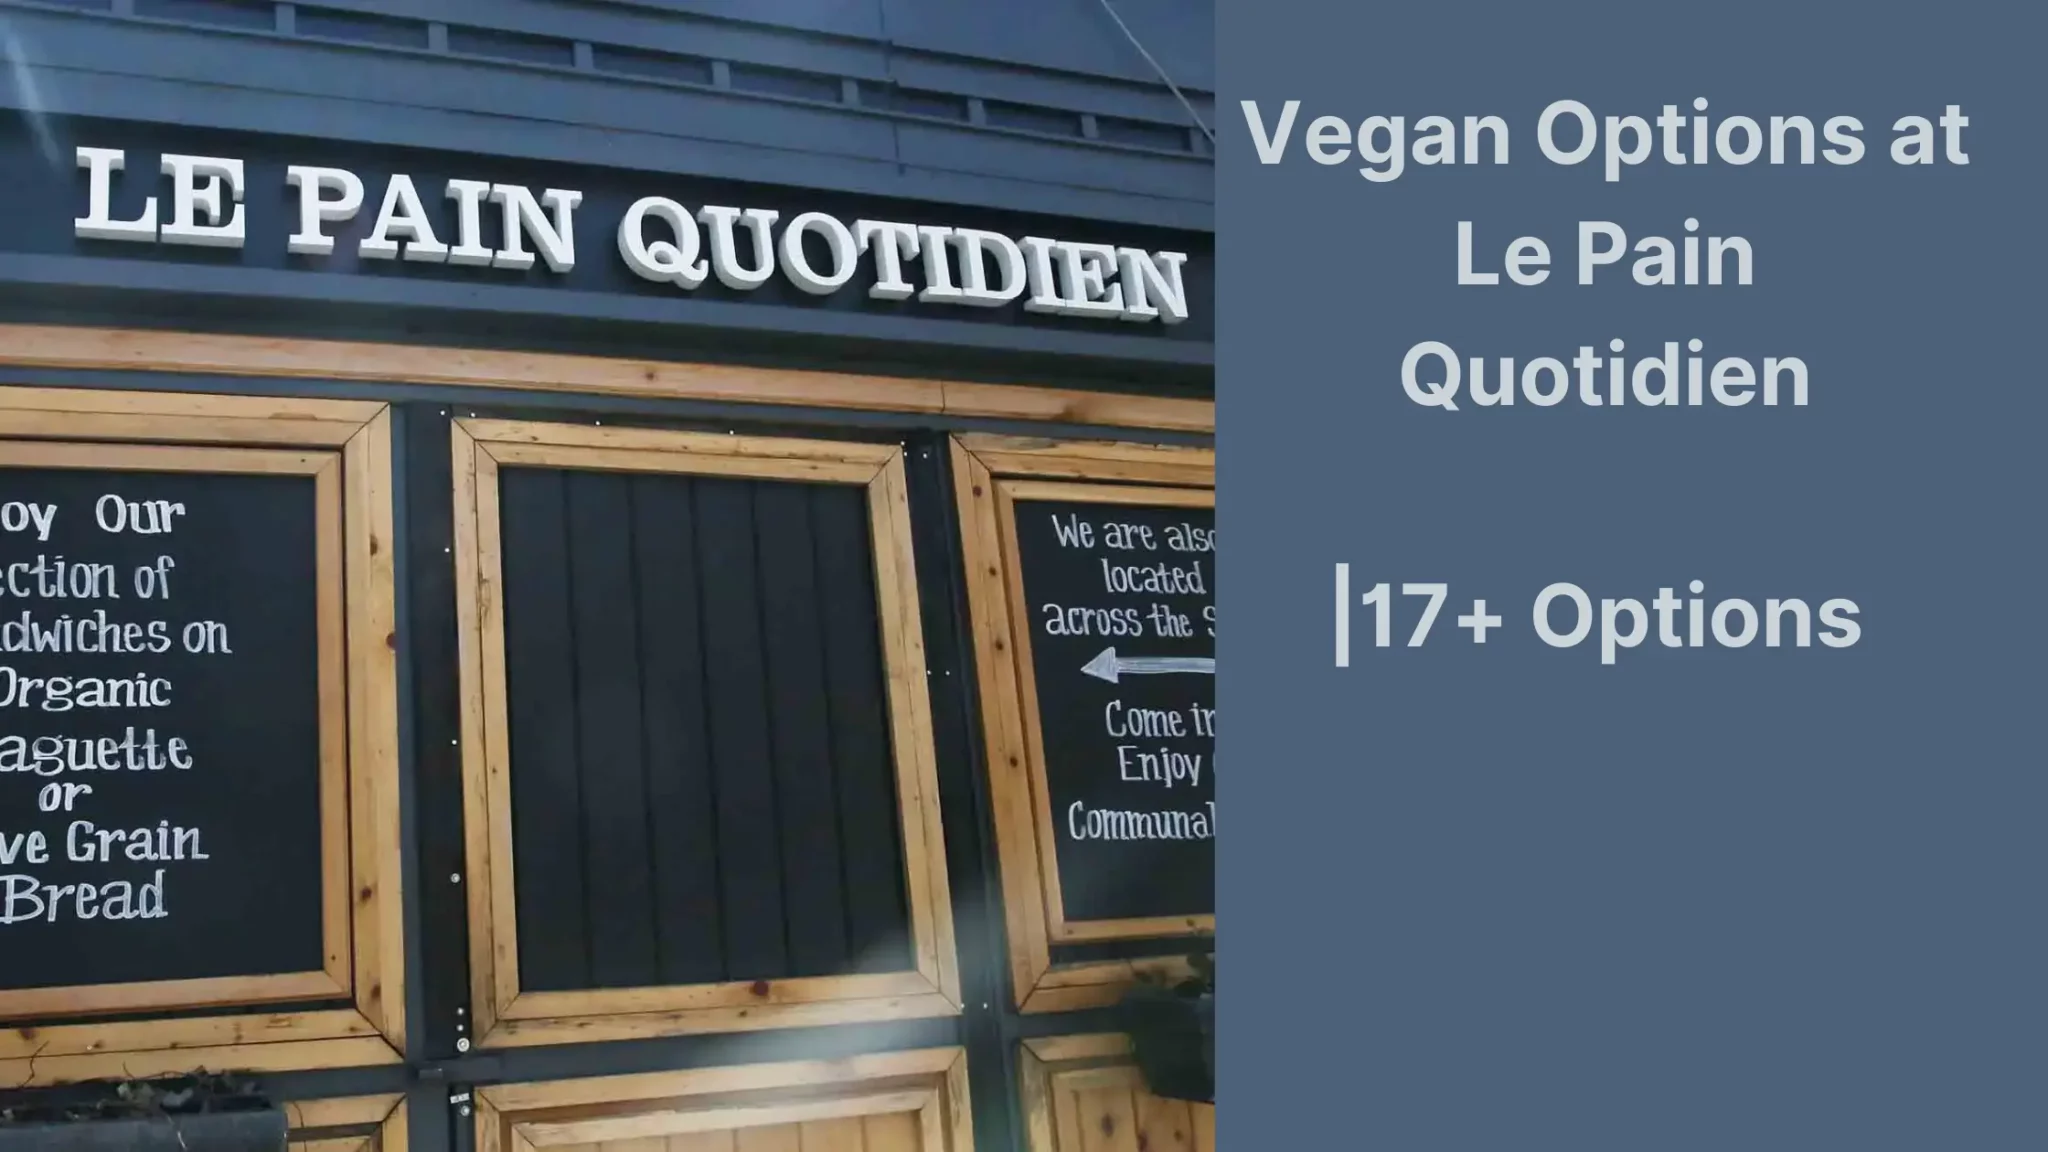 Vegan Options at Le Pain Quotidien